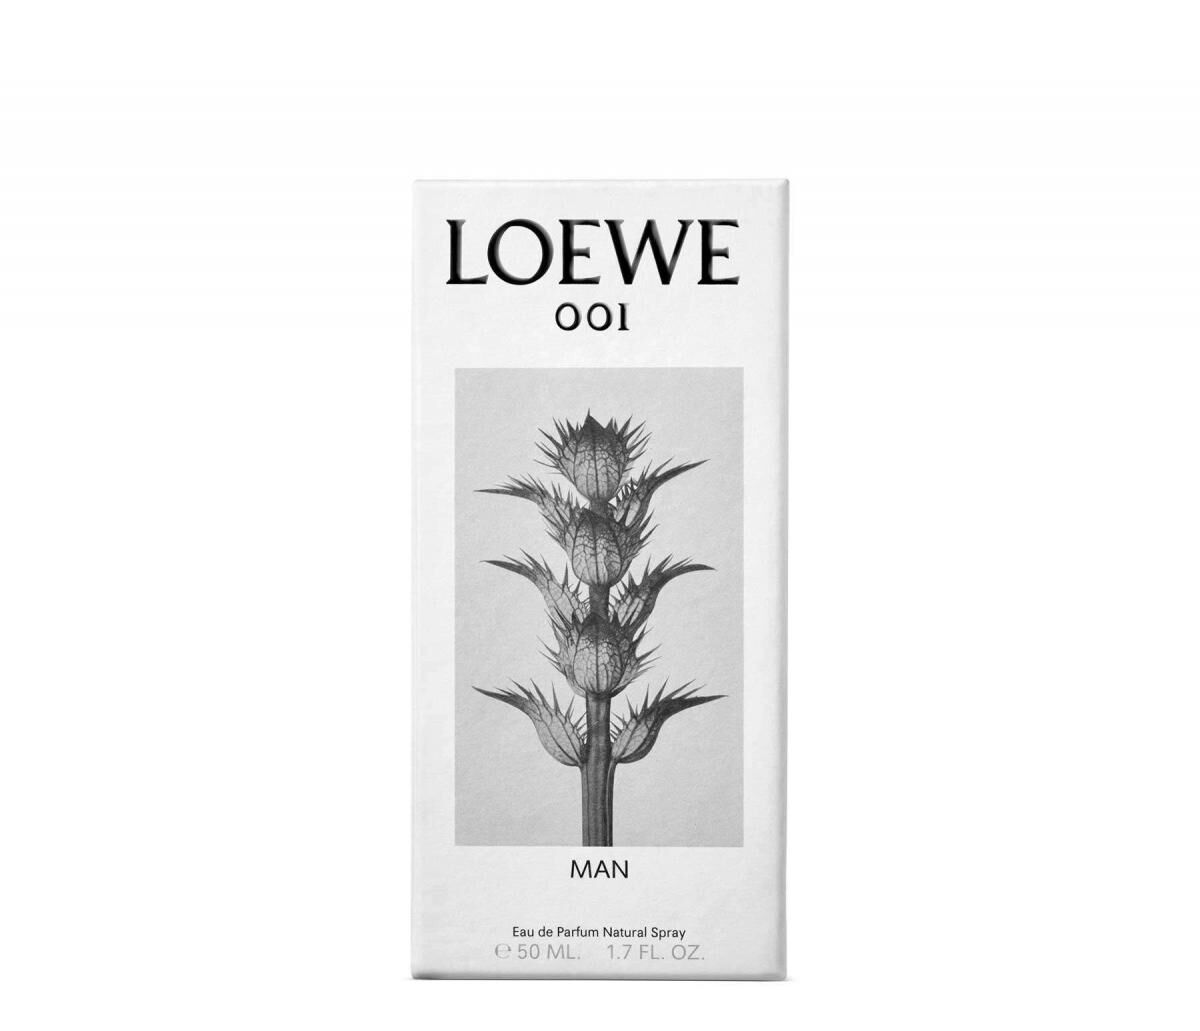 loewe 001